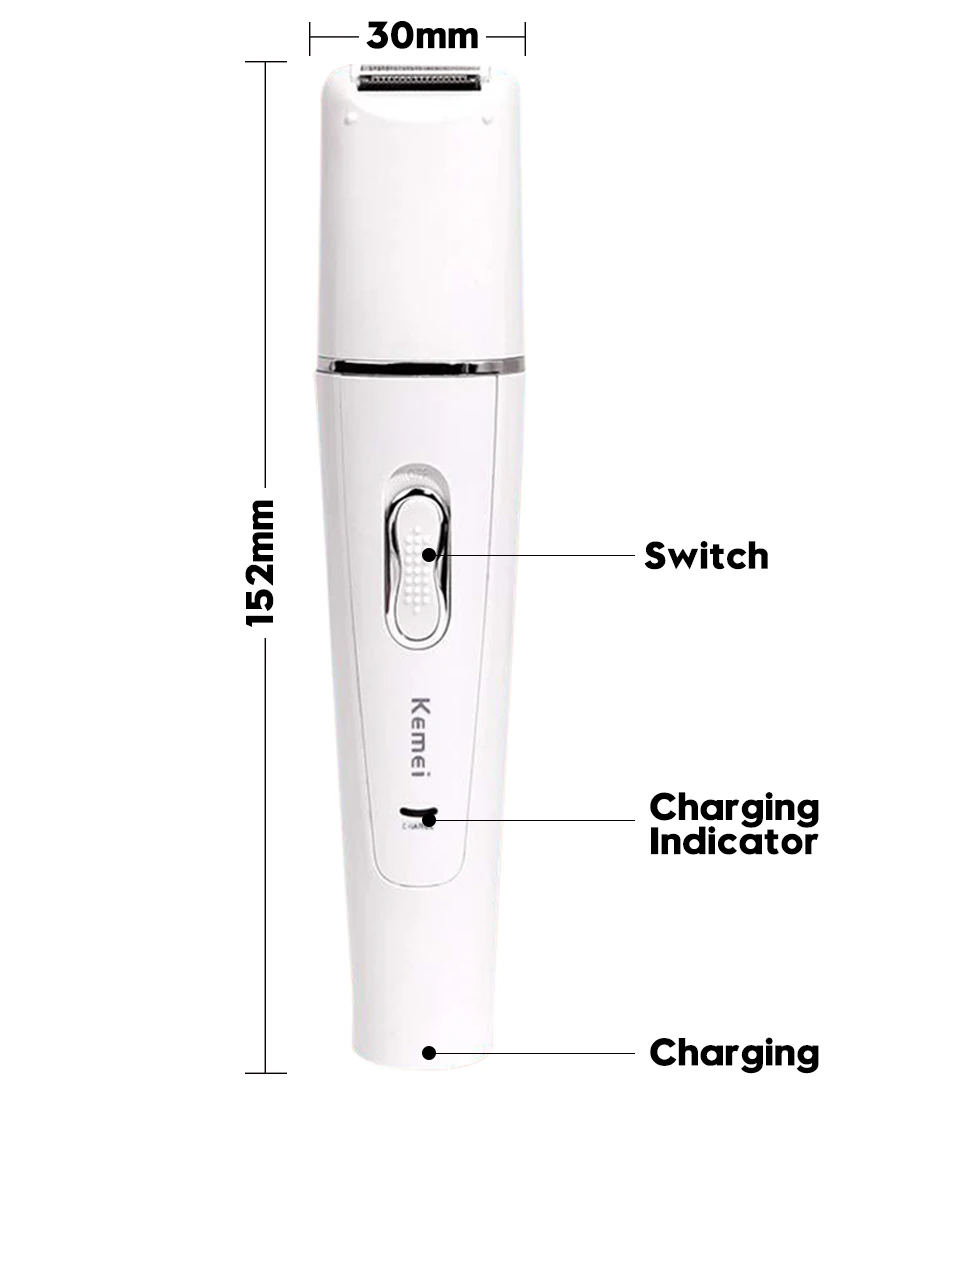 5в1 эпилятор для женщин, Электрический женский эпилятор, удаление волос на лице, бритва для женщин, станок для бритья для бикини, тела, лица